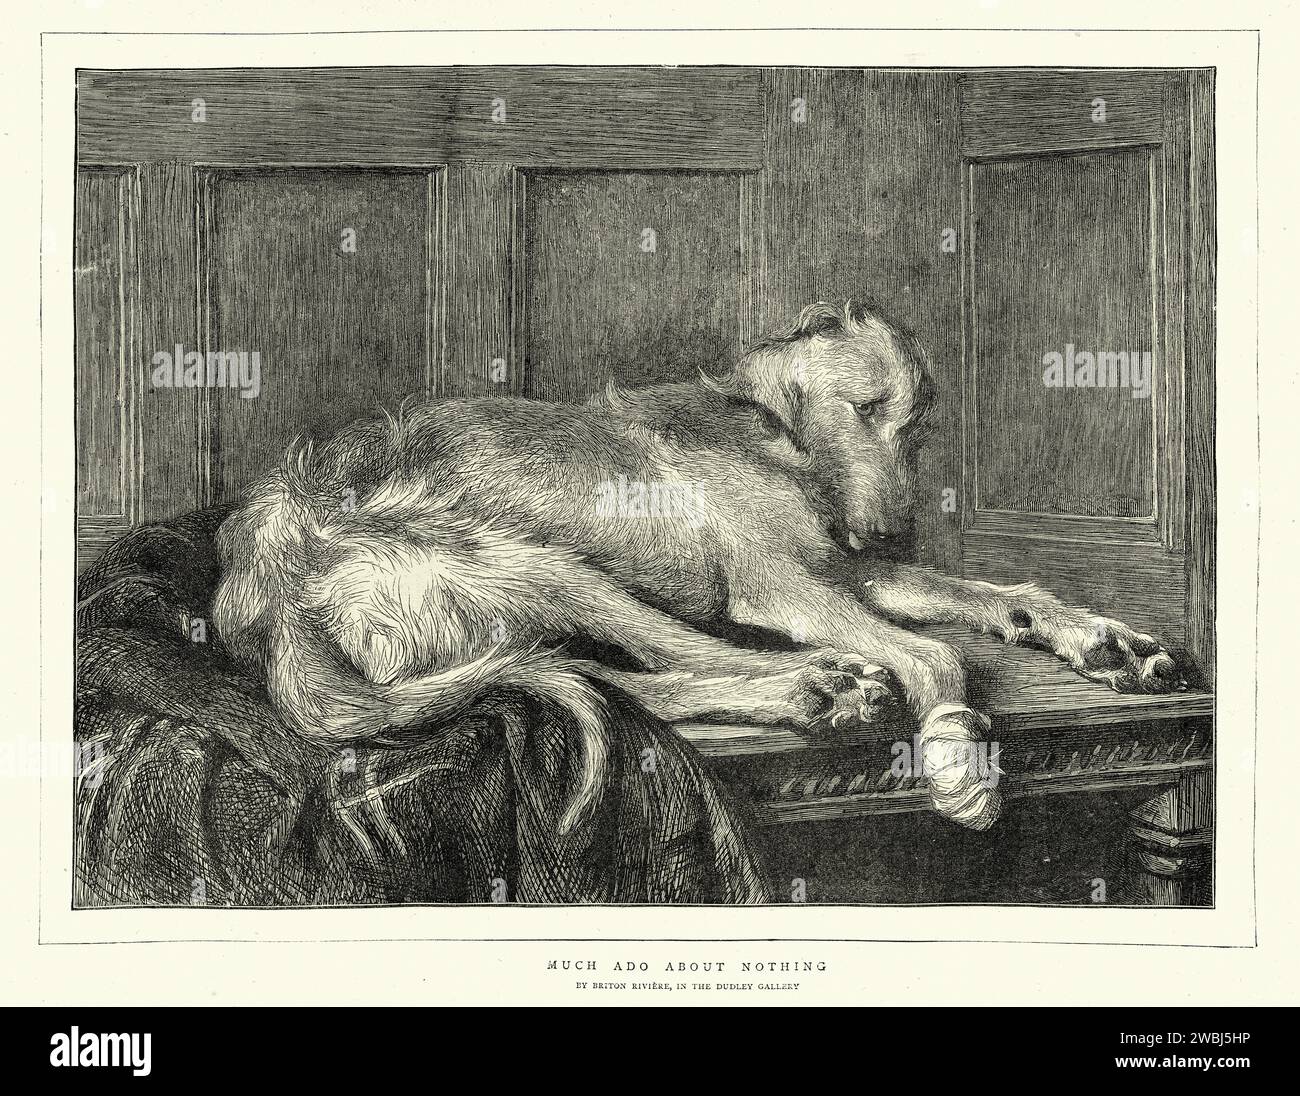 Illustration vintage de chien triste avec un bandage sur sa patte blessée, art animal victorien, anglais, années 1870, après la peinture beaucoup de bruit sur rien, par Briton Riviere Banque D'Images